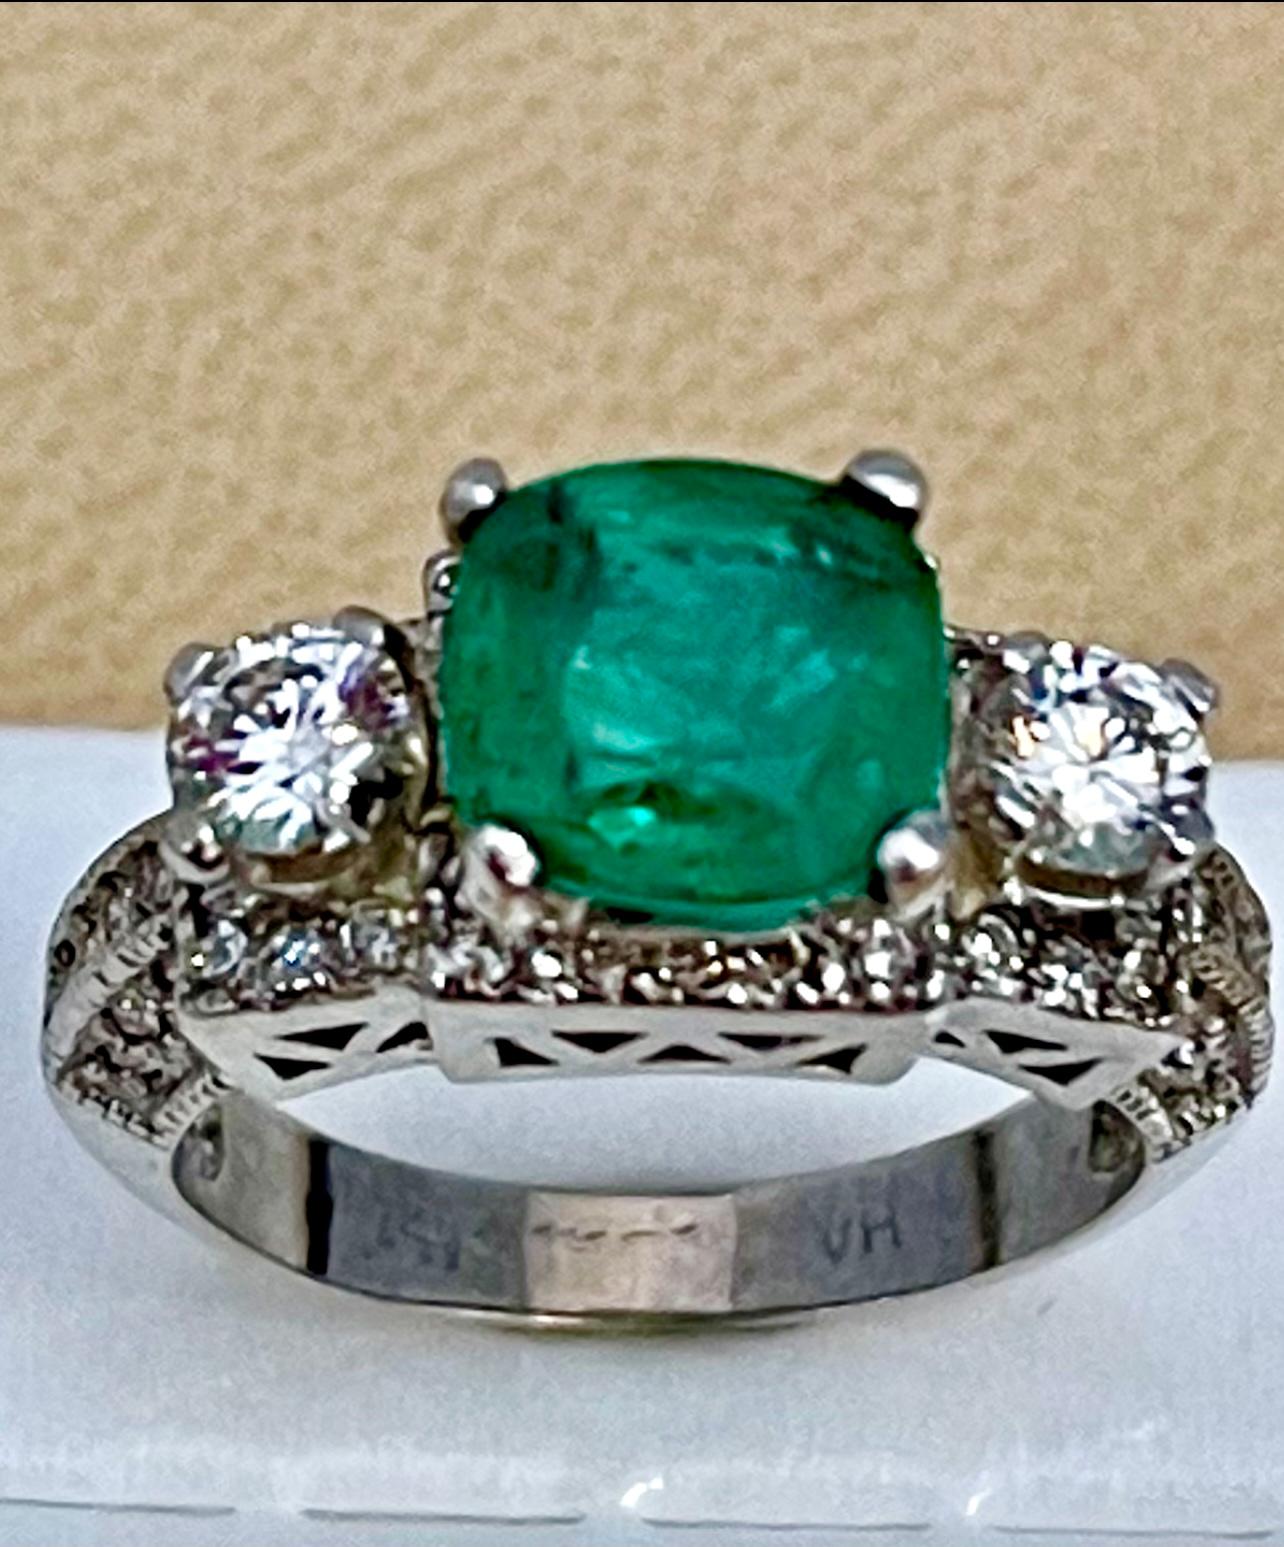 2 carat emerald size